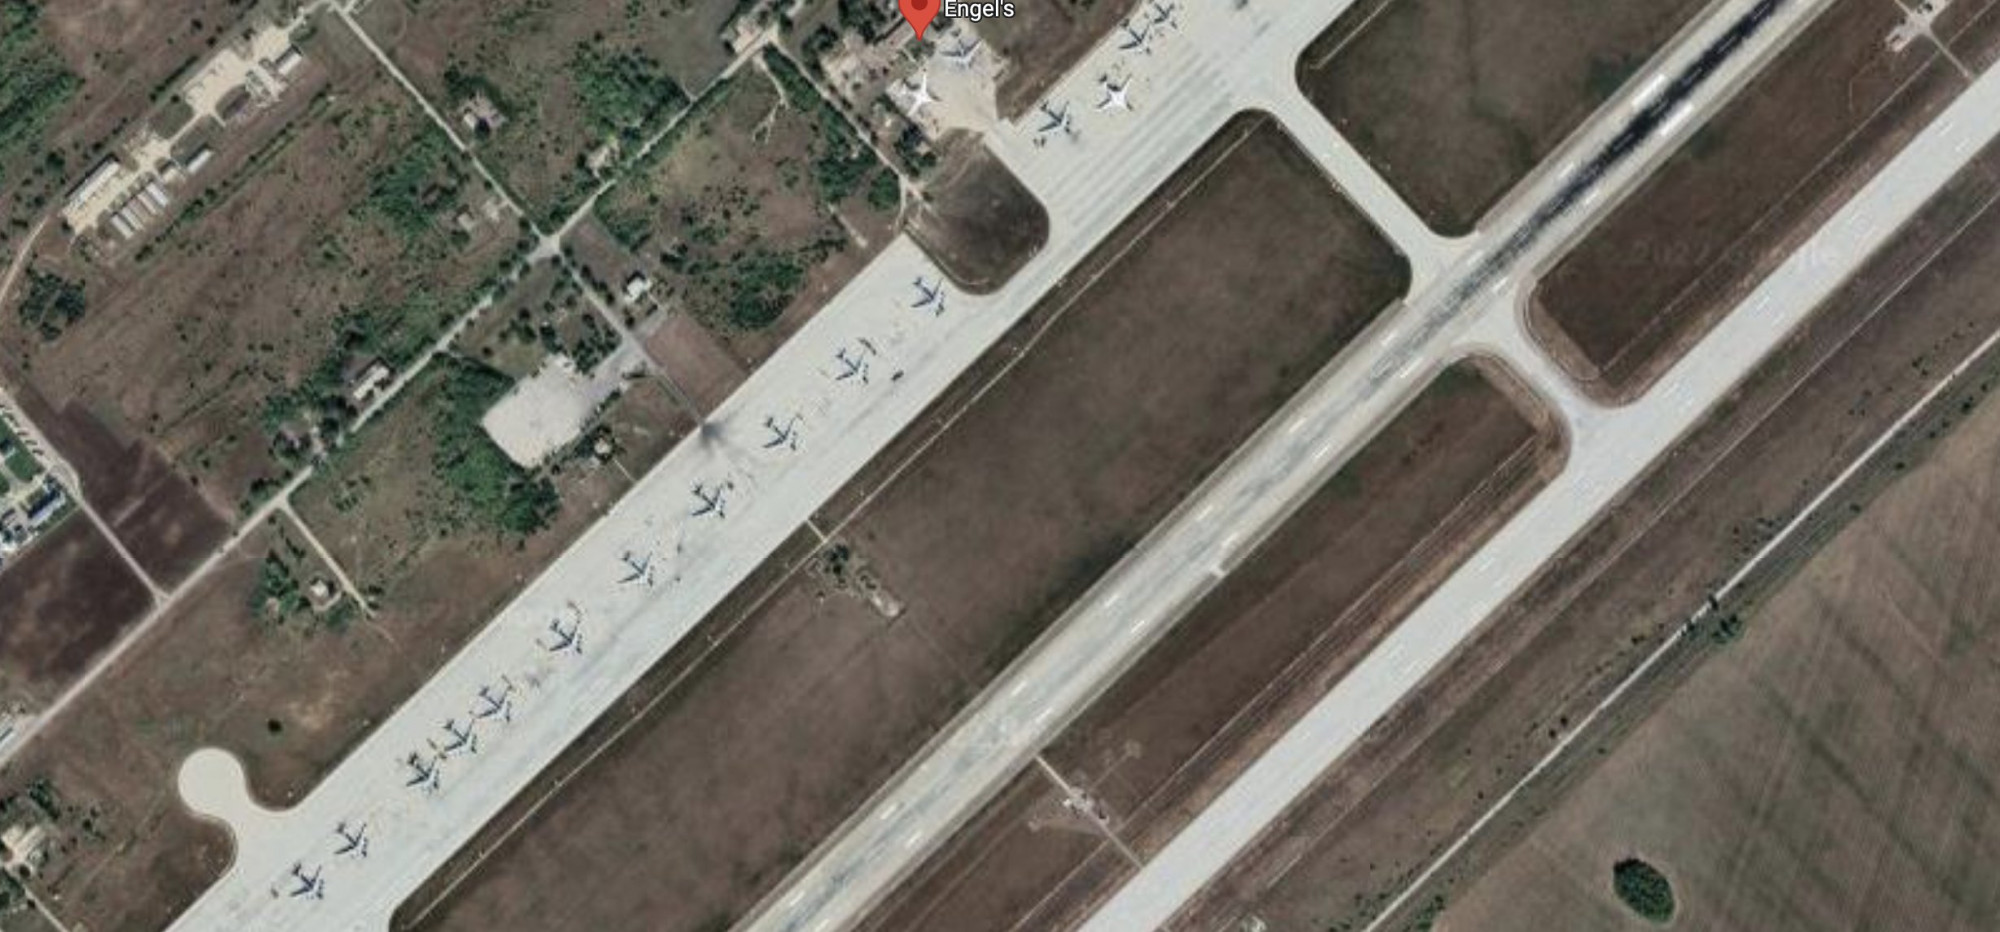 Két orosz katonai repülőtéren is robbanás történt